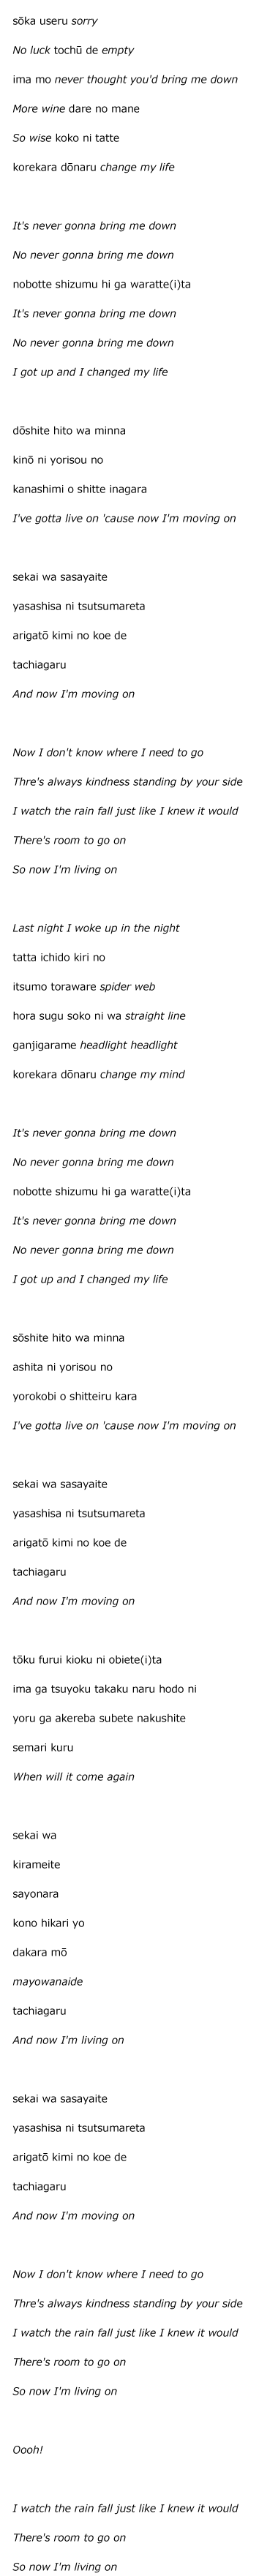 Headlight Lyrics in Rōmaji